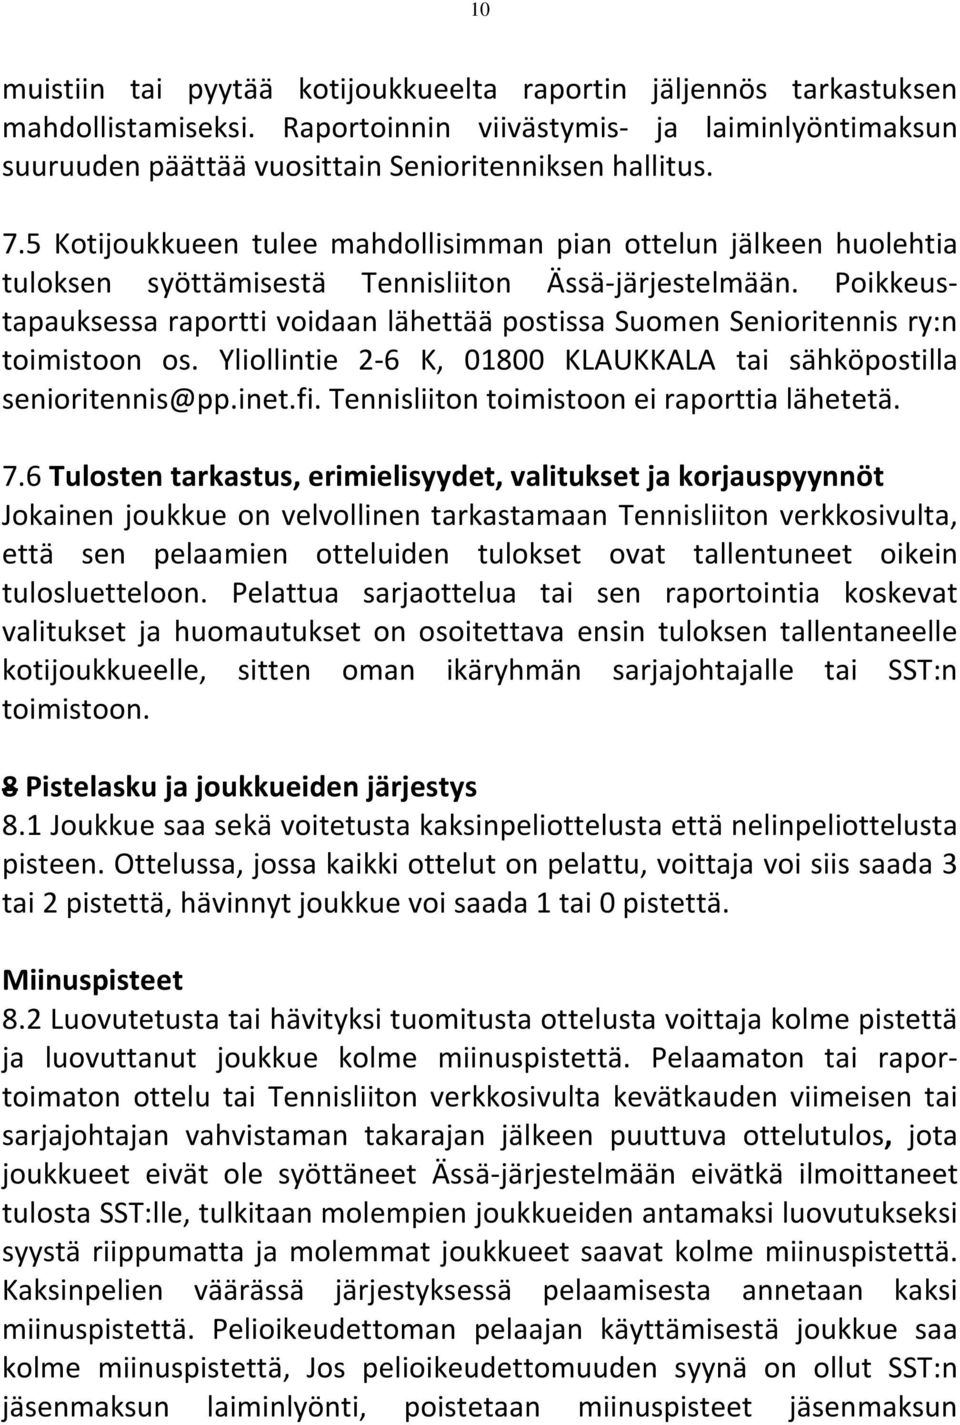 Poikkeustapauksessa raportti voidaan lähettää postissa Suomen Senioritennis ry:n toimistoon os. Yliollintie 2-6 K, 01800 KLAUKKALA tai sähköpostilla senioritennis@pp.inet.fi.